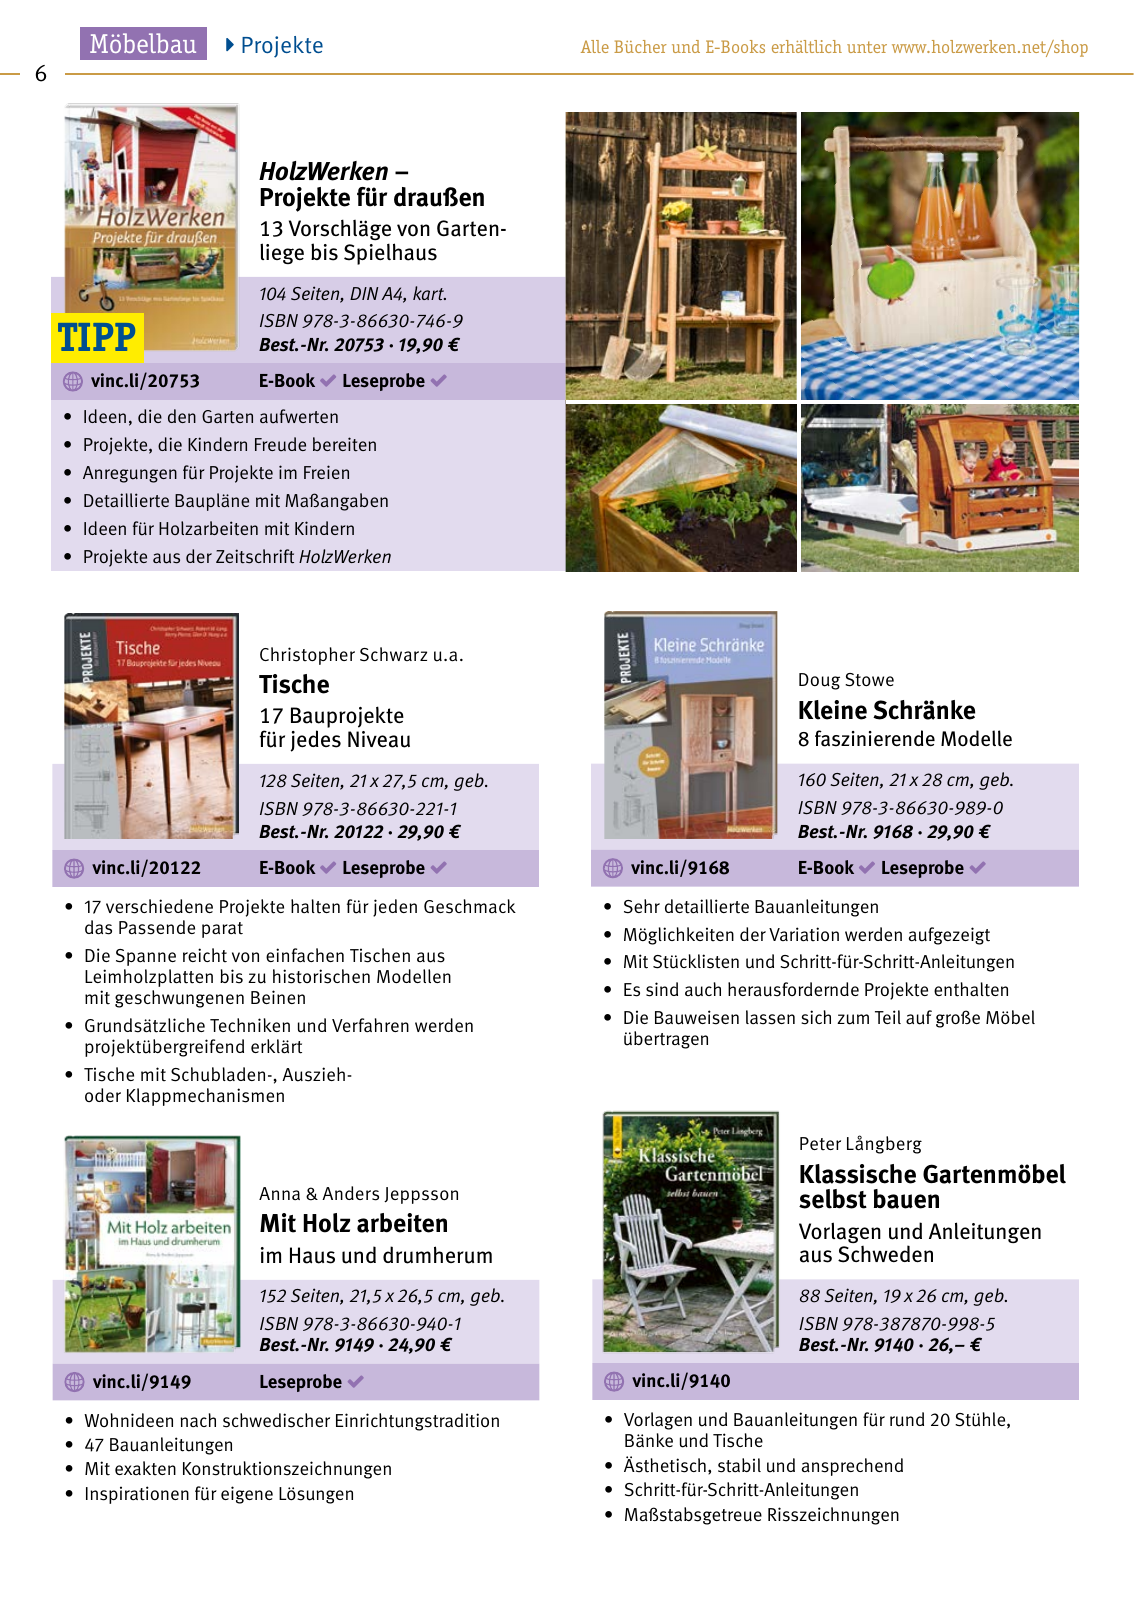 Vorschau HolzWerken Katalog 2020 Seite 6